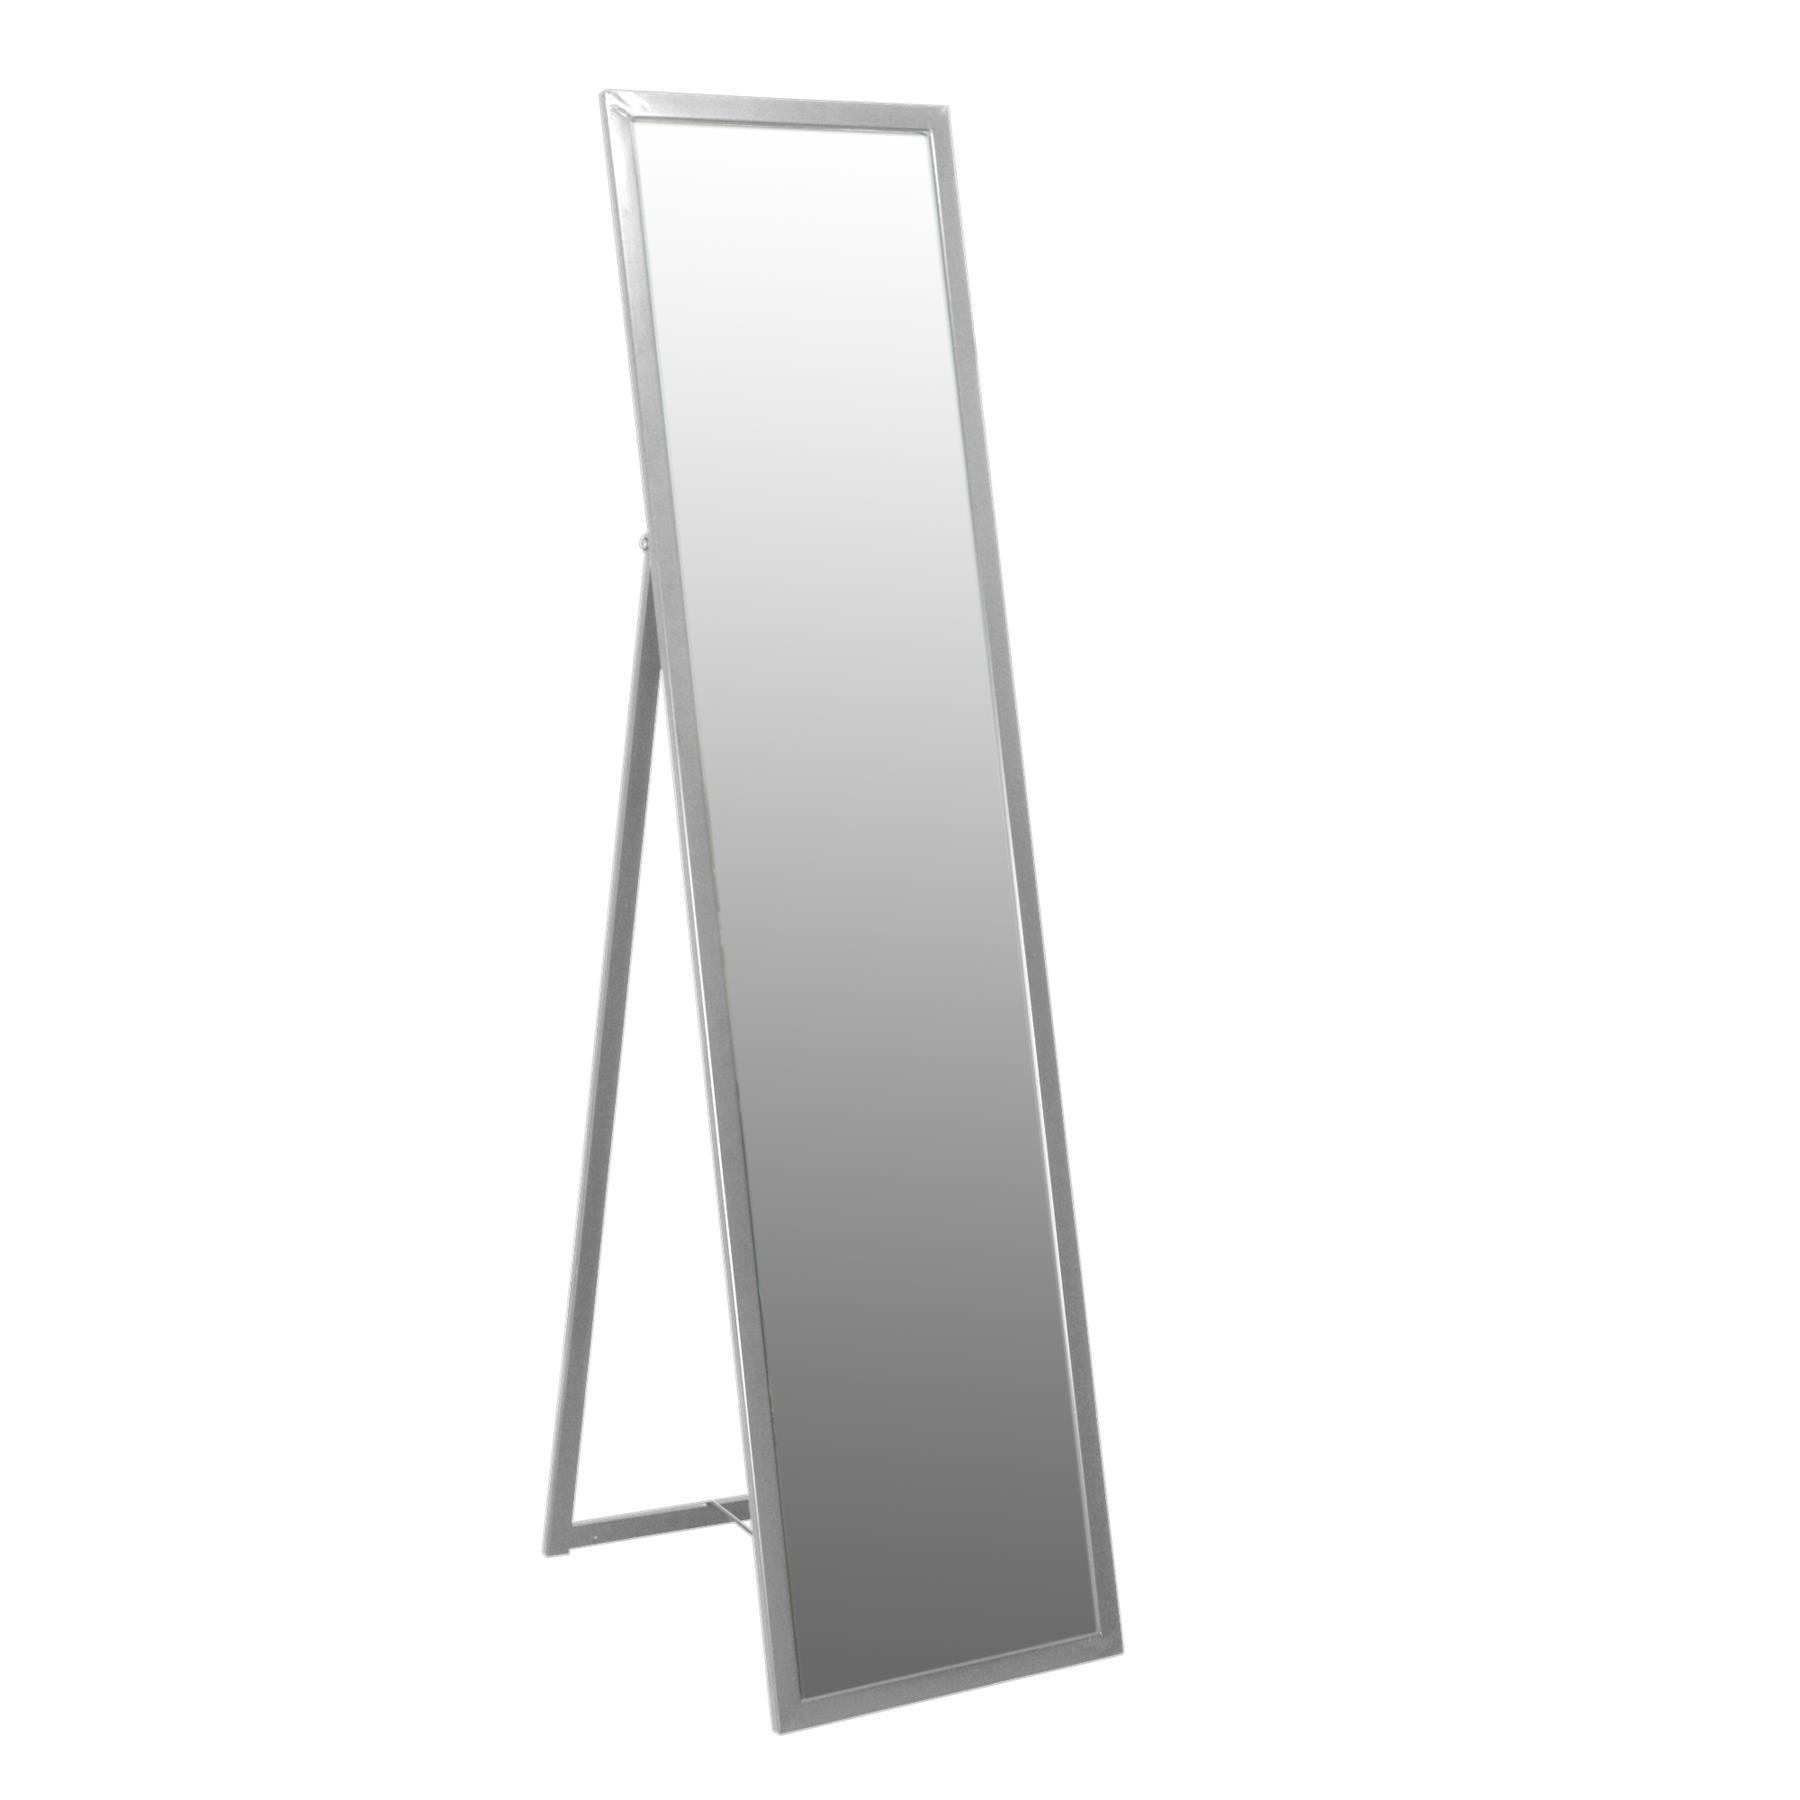 Square Full-Length Mirror - 137cm x 35.5cm - image 1